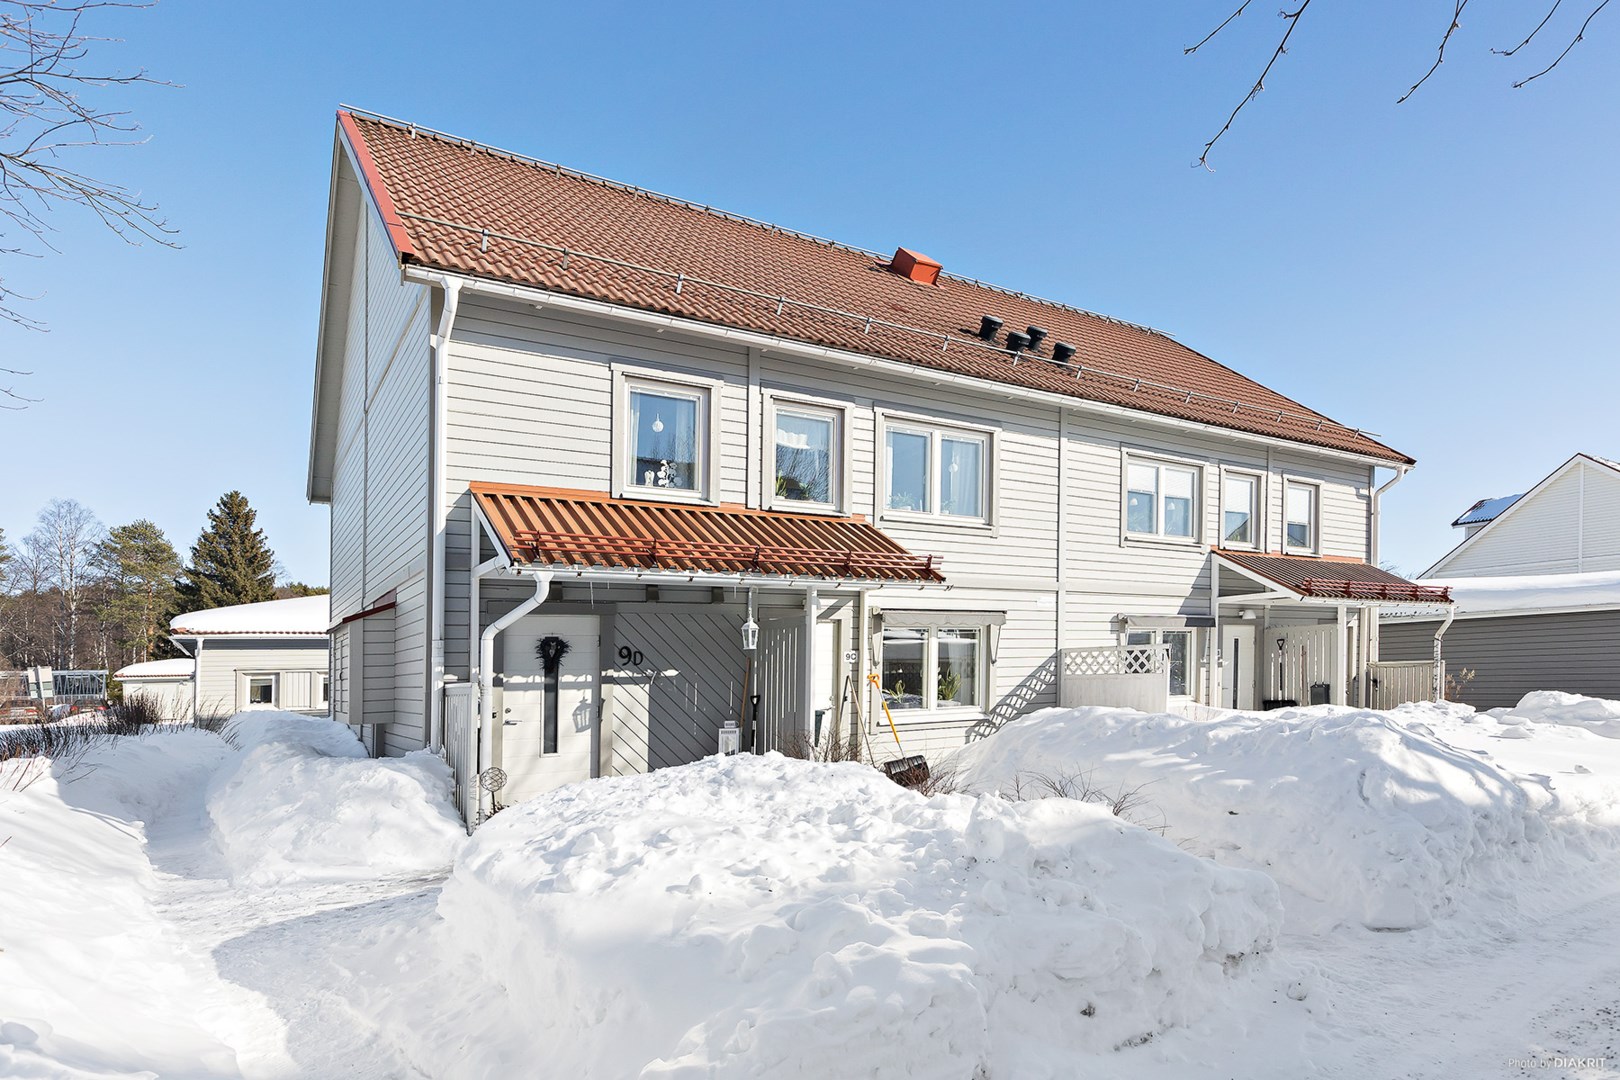 Bostadsrätt i Västra Skurholmen, Luleå, Sverige, Gränsgatan 9D